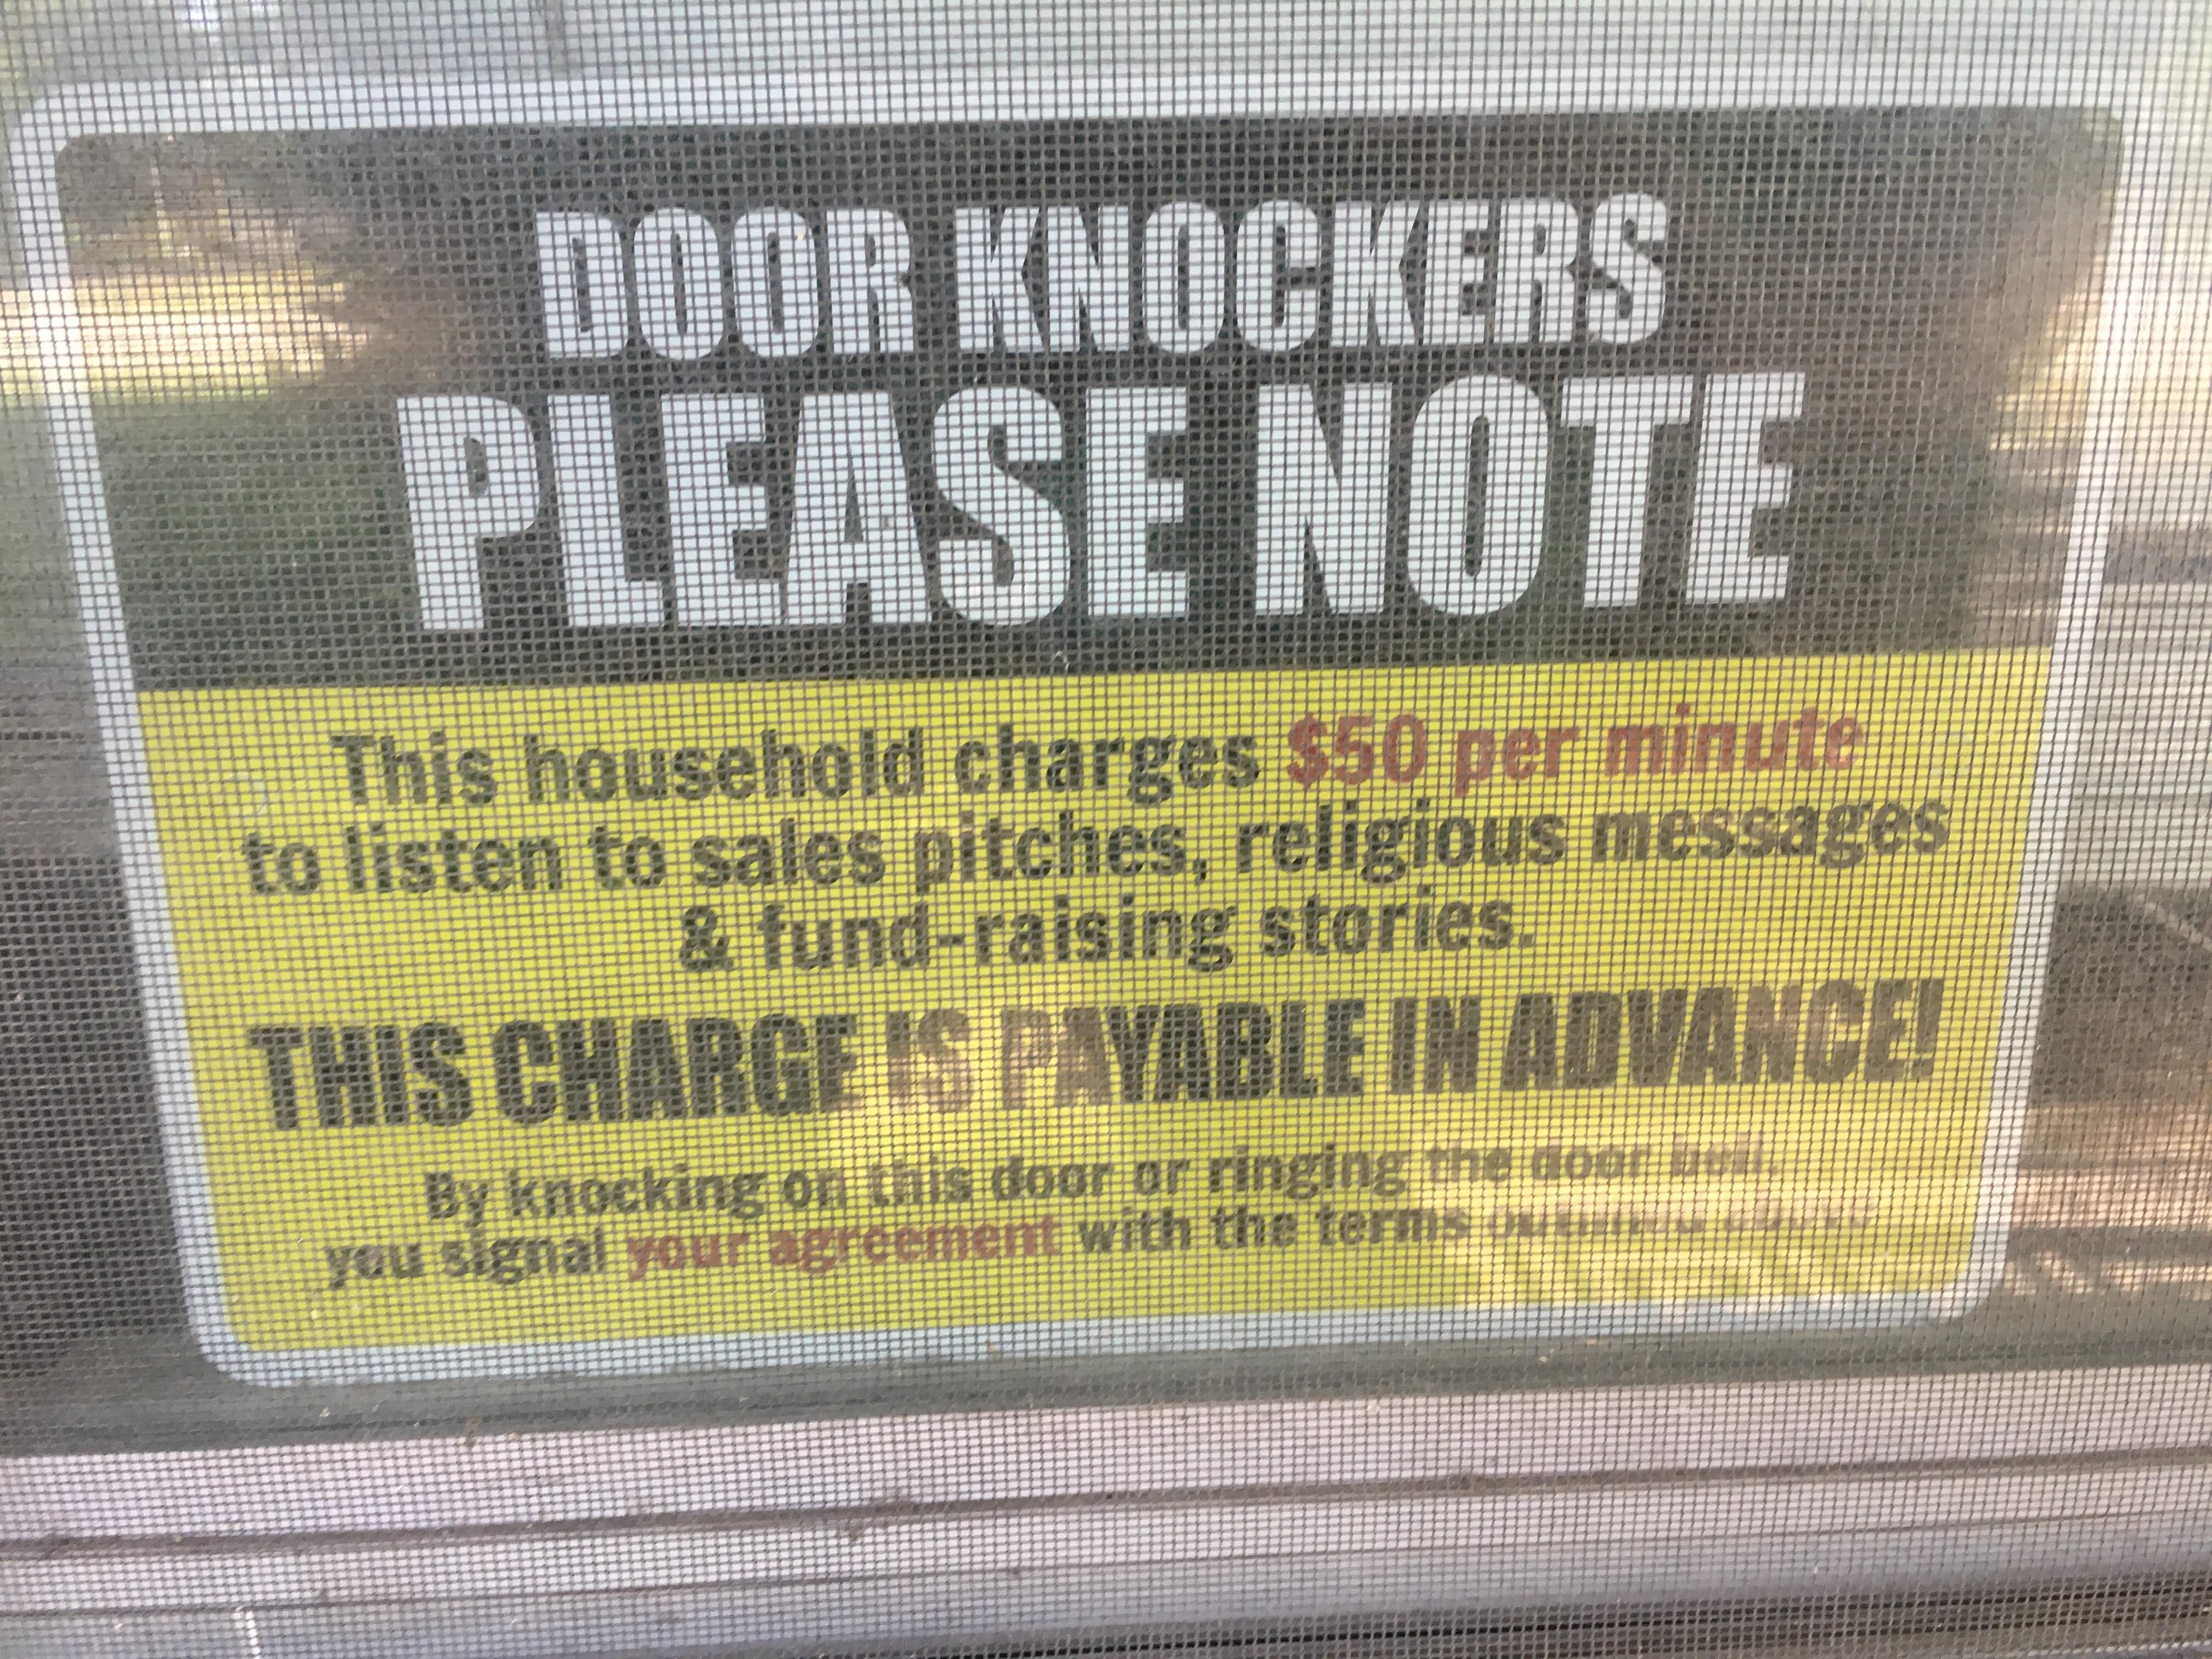 One way to keep those pesky Jehovahs Witnesses away